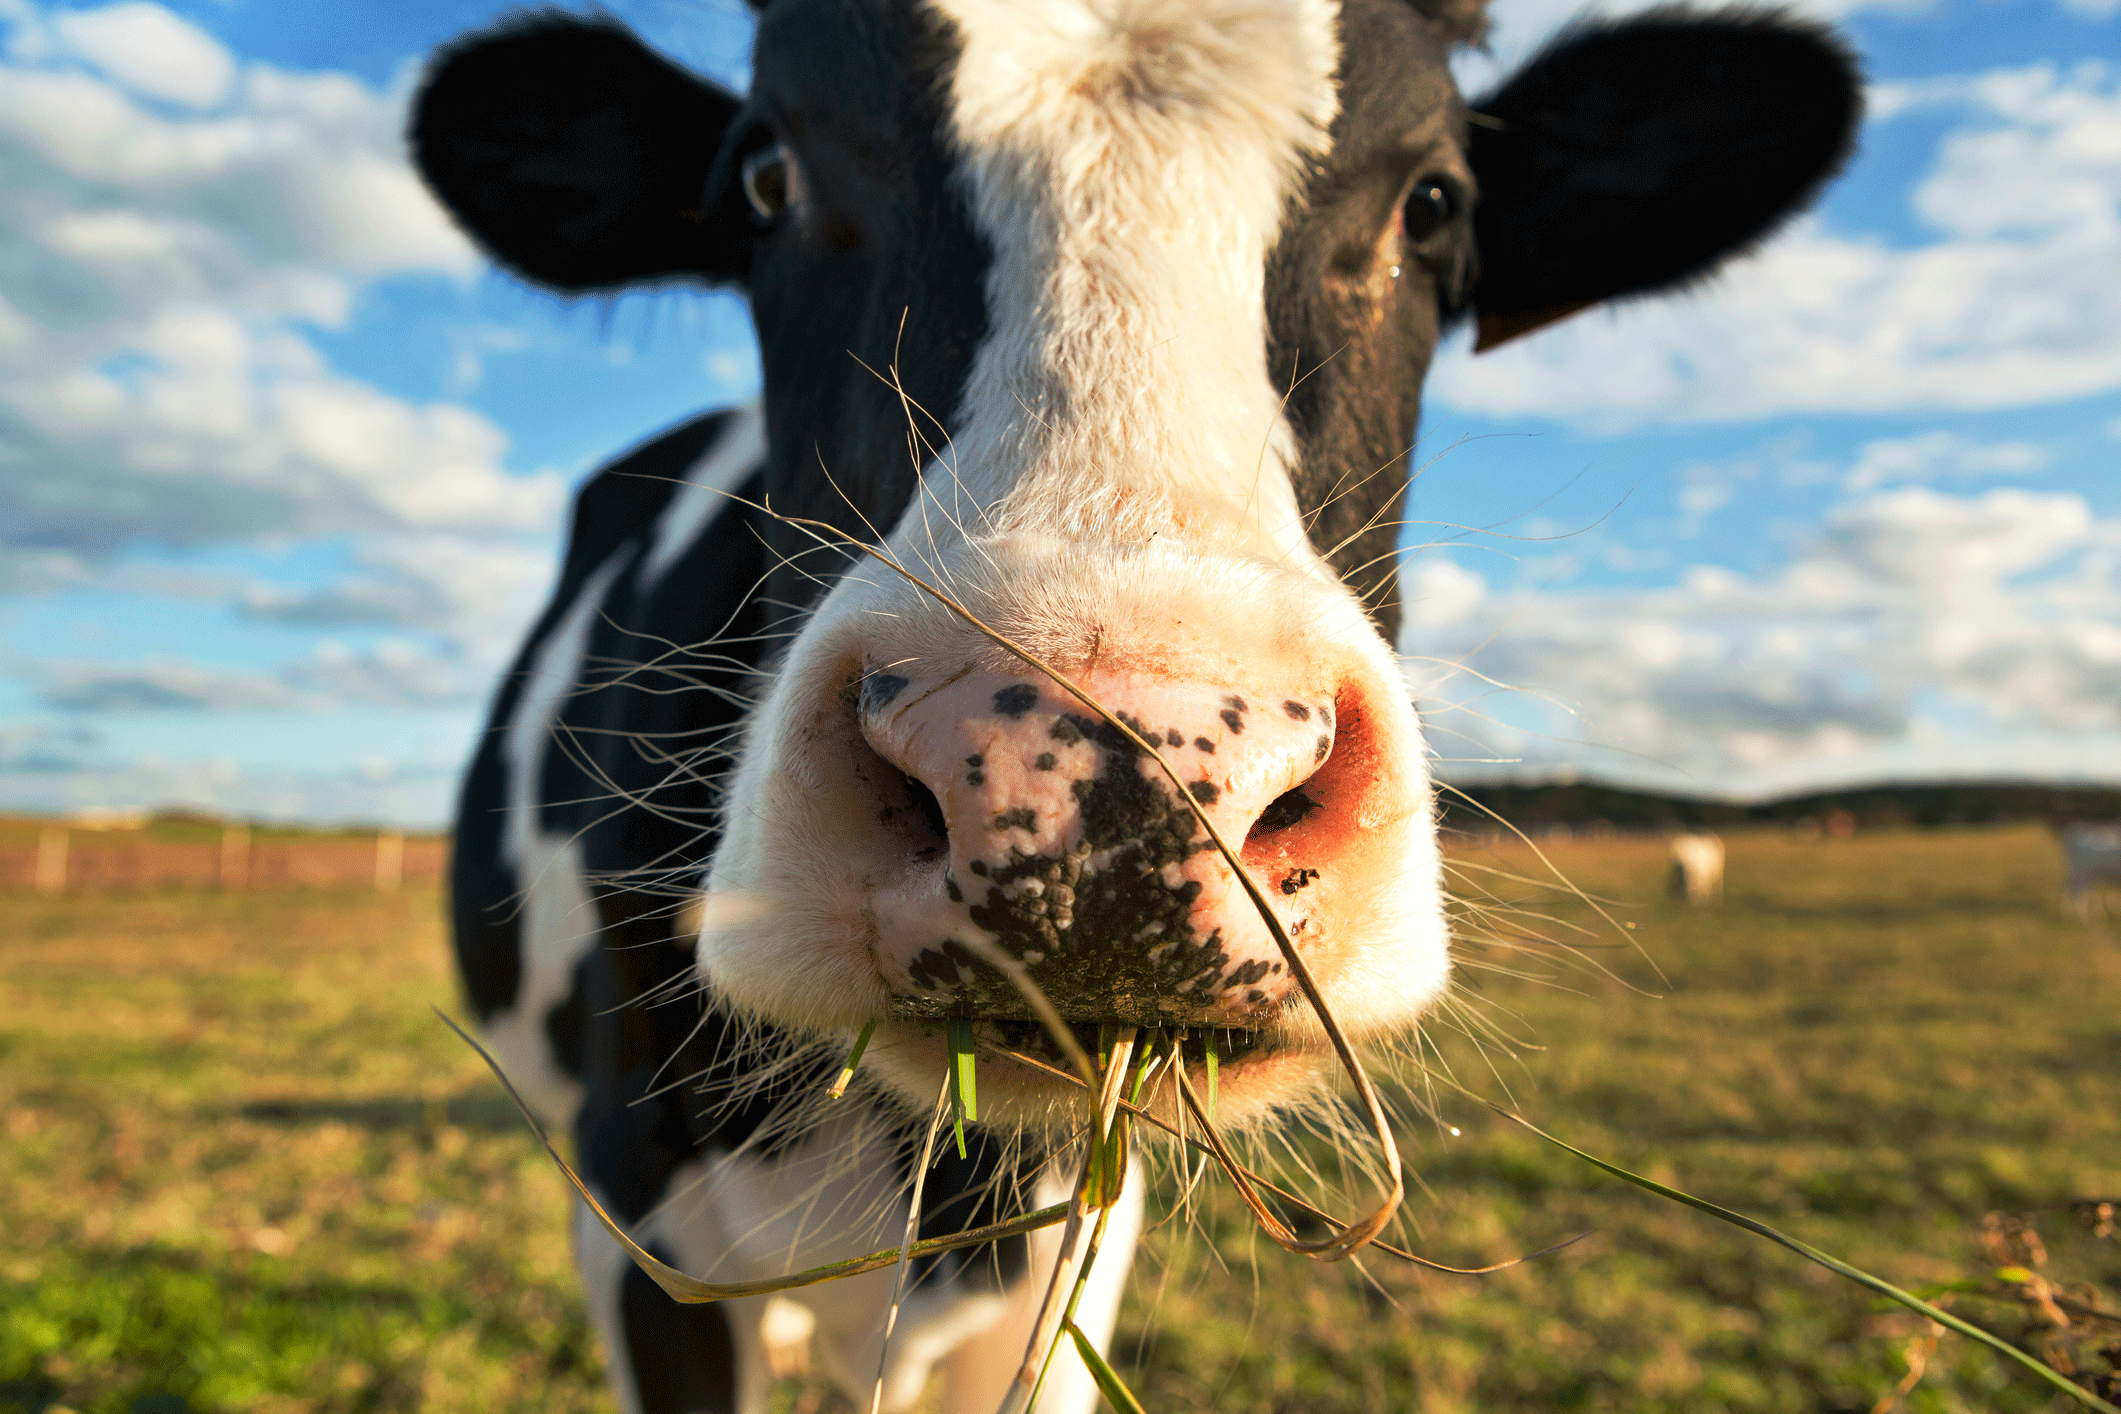 Cientista reduz o pum da vaca em 30% -- acredite, isso é muito importante | Exame